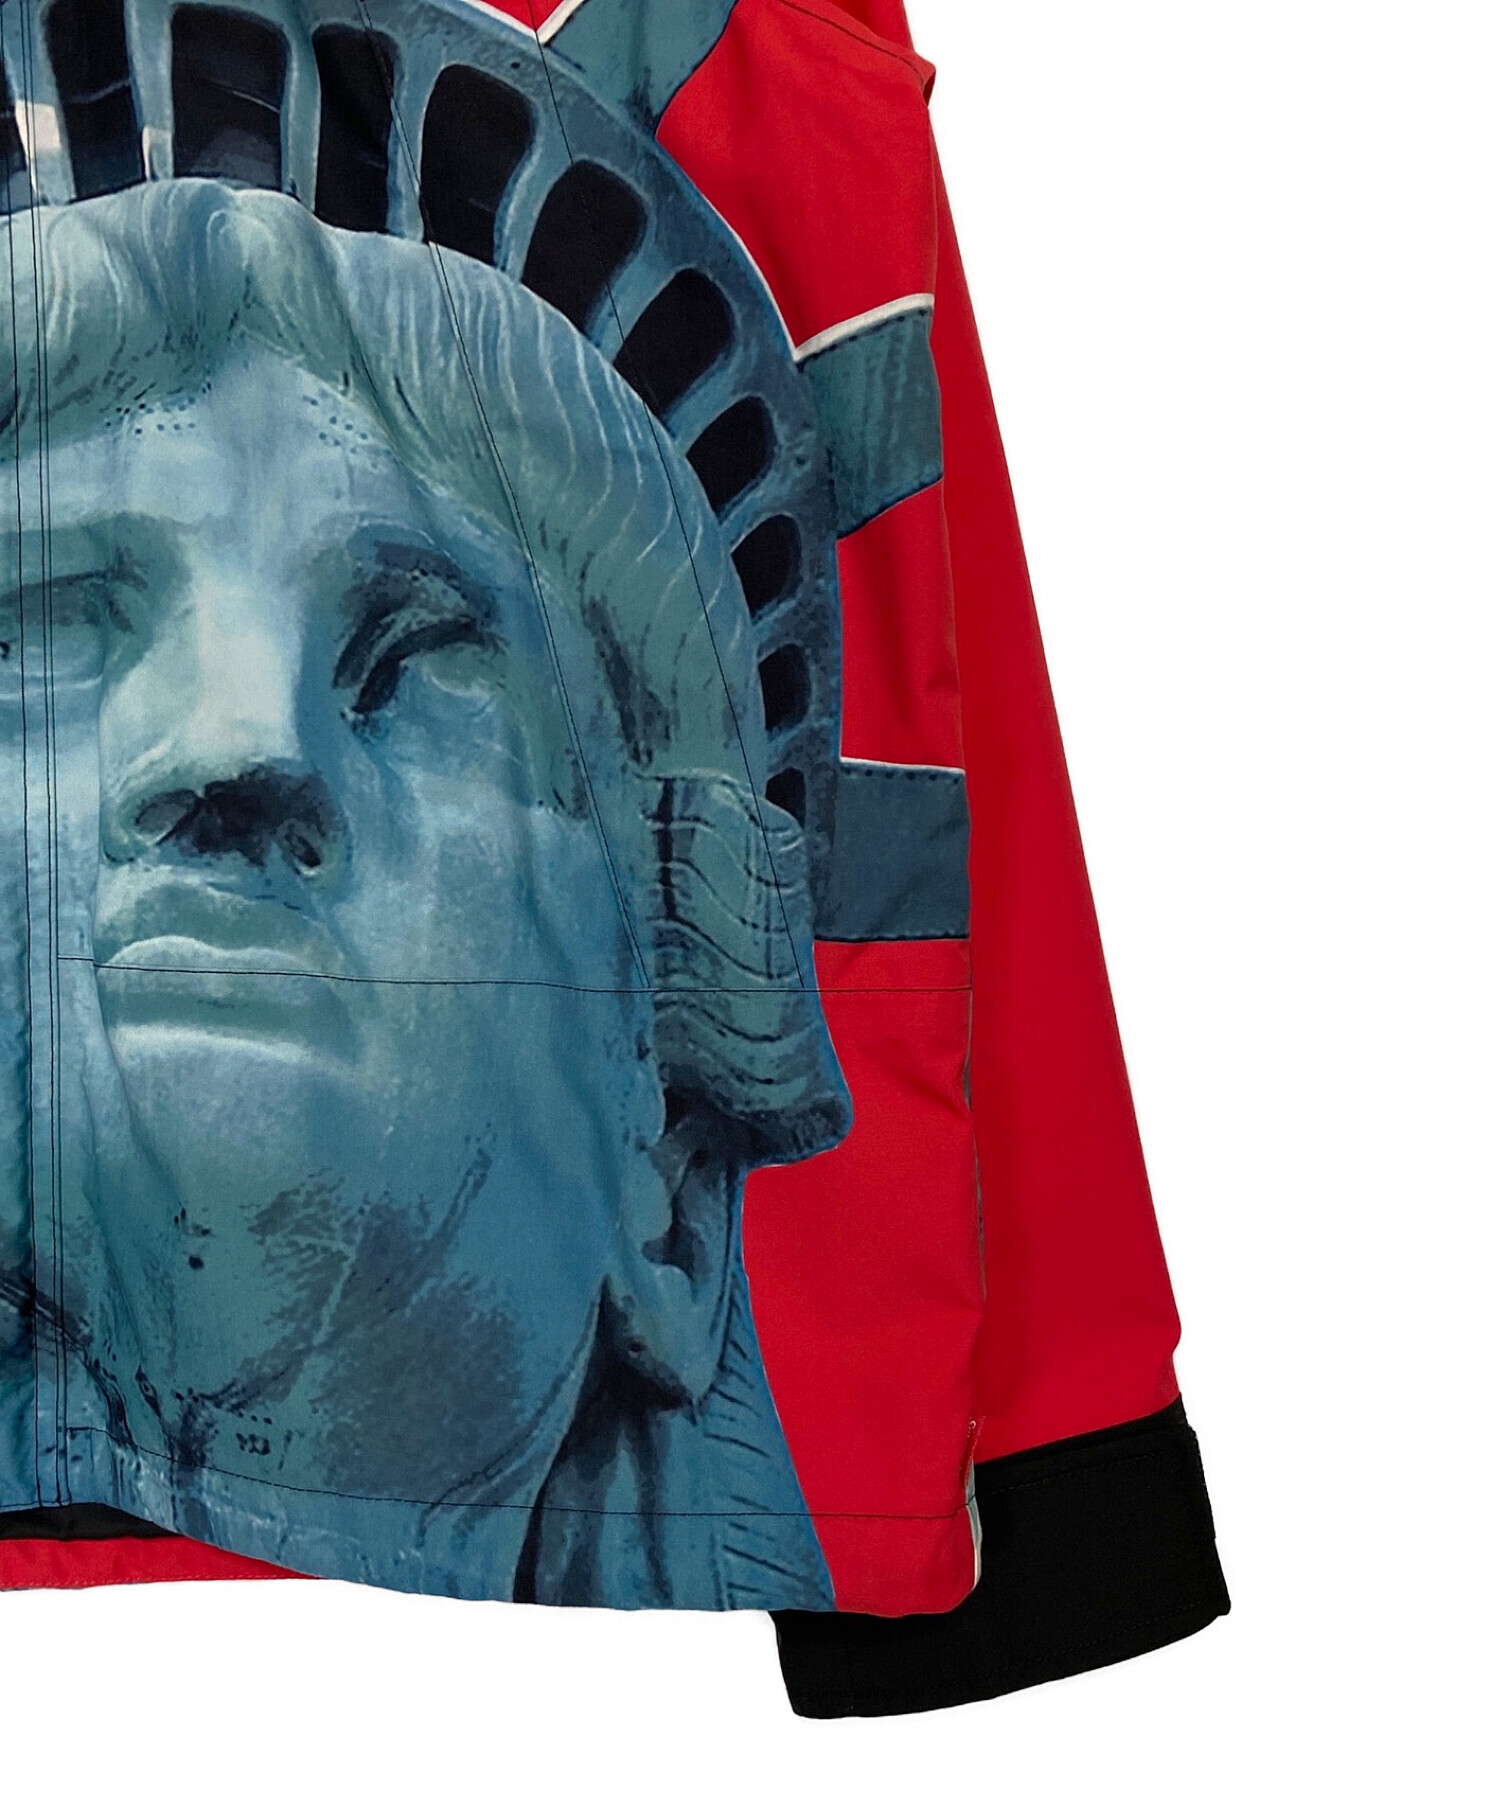 SUPREME (シュプリーム) THE NORTH FACE (ザ ノース フェイス) Statue of Liberty Mountain  Jacket レッド×ブラック サイズ:M